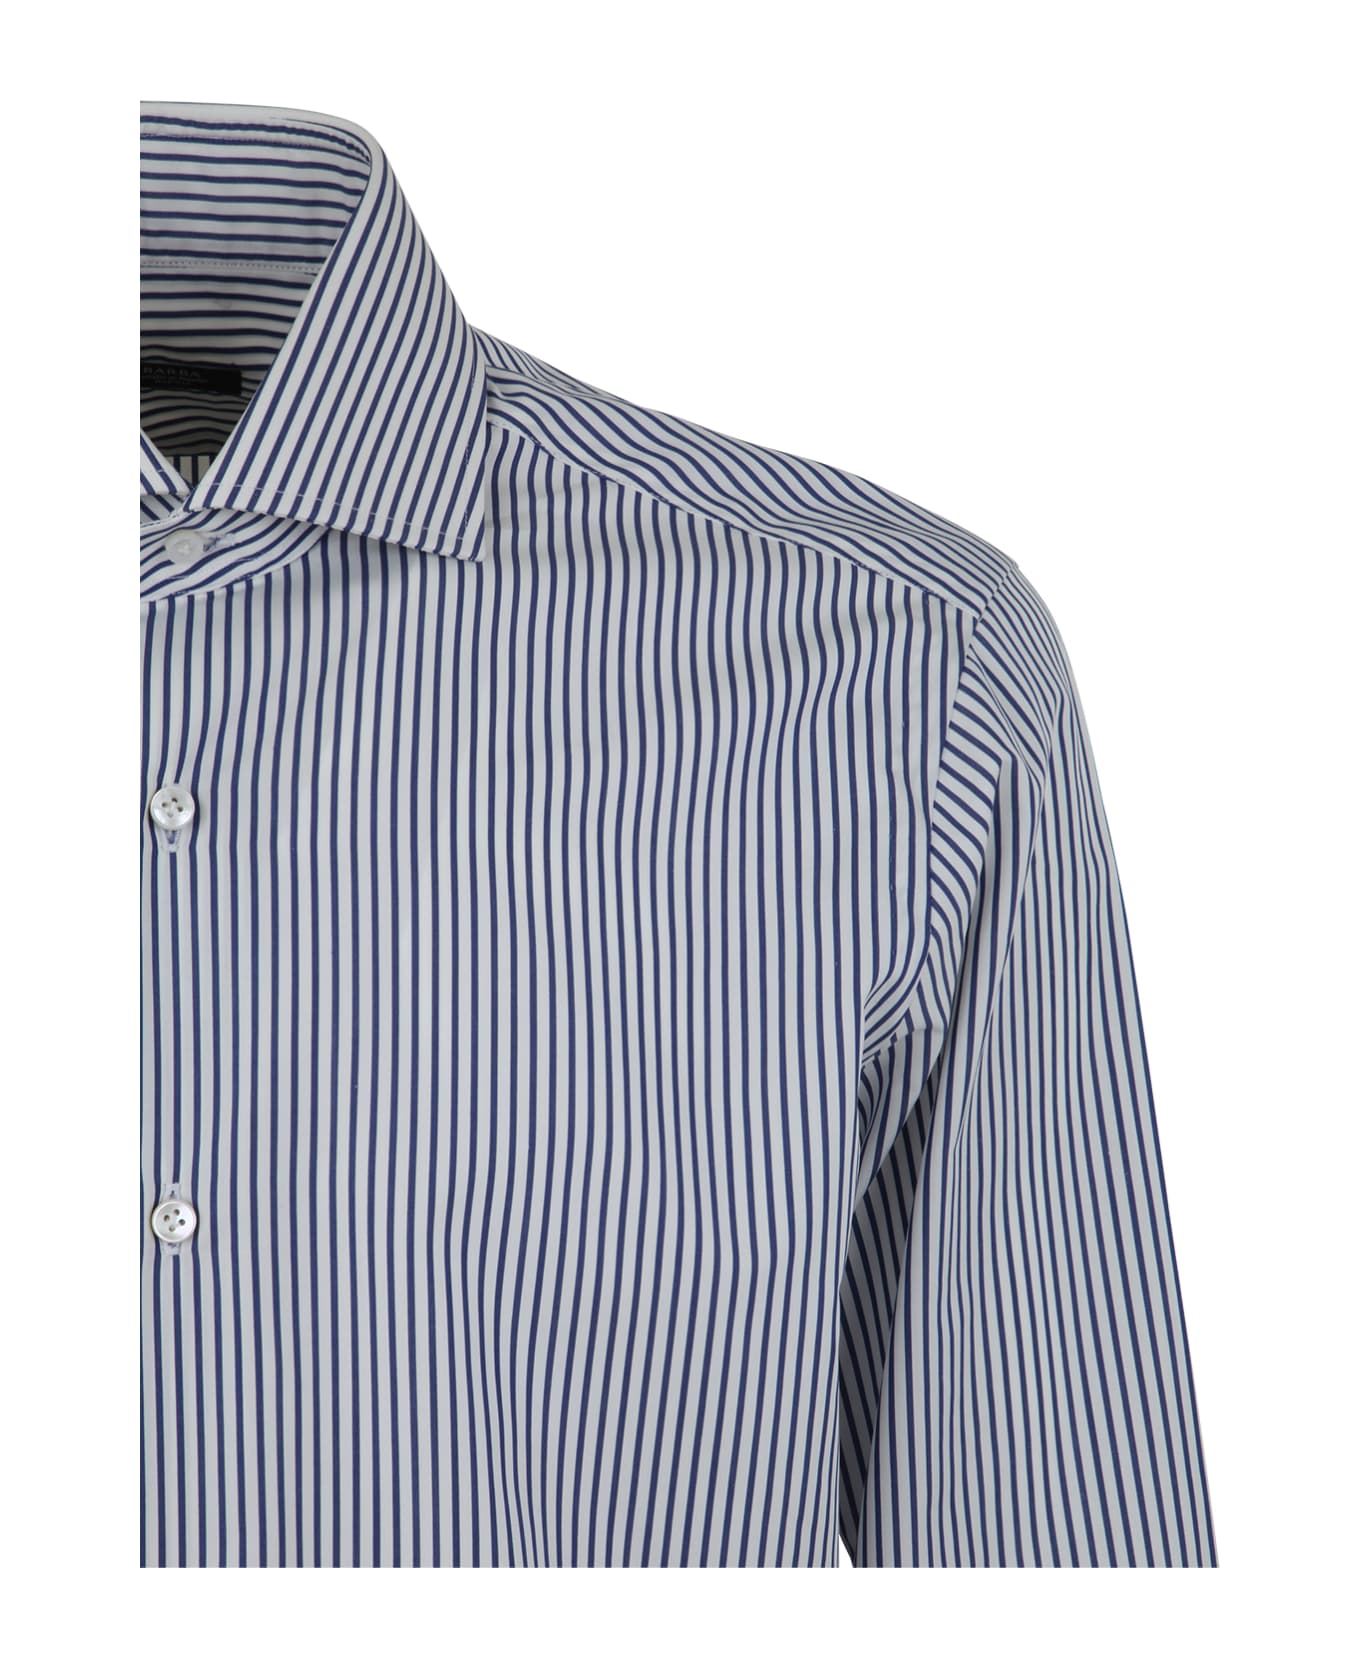 Barba Napoli Striped Shirt - White Blue シャツ